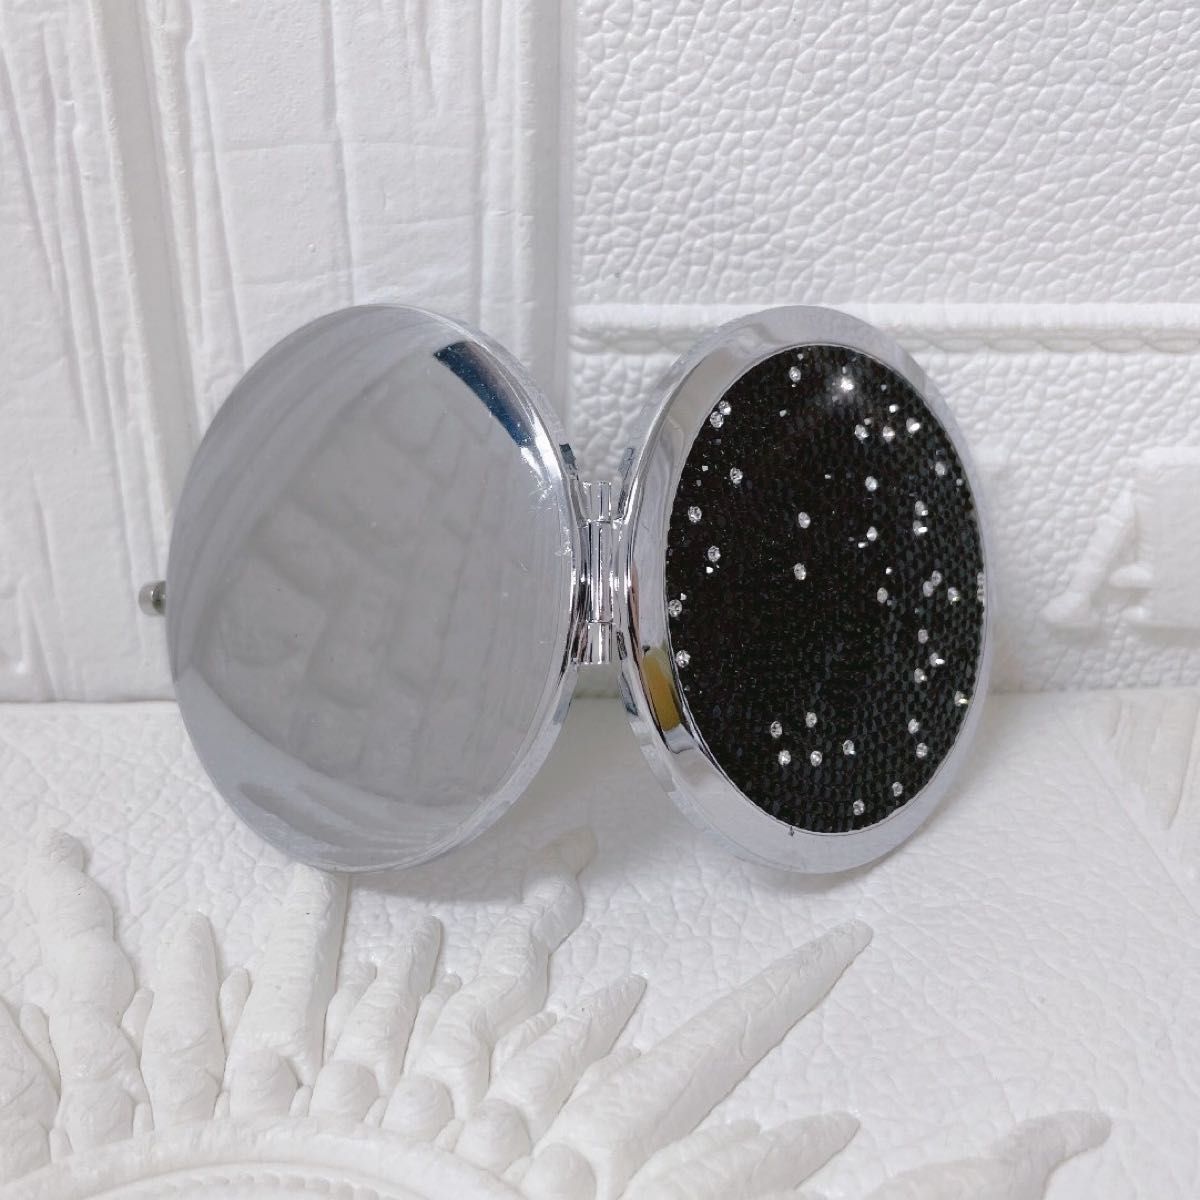 新品 クリスタル両面コンパクトミラー ブラック キラキラ ラインストーン デコレーション ダイヤモンドカット 手鏡 携帯用ミラー